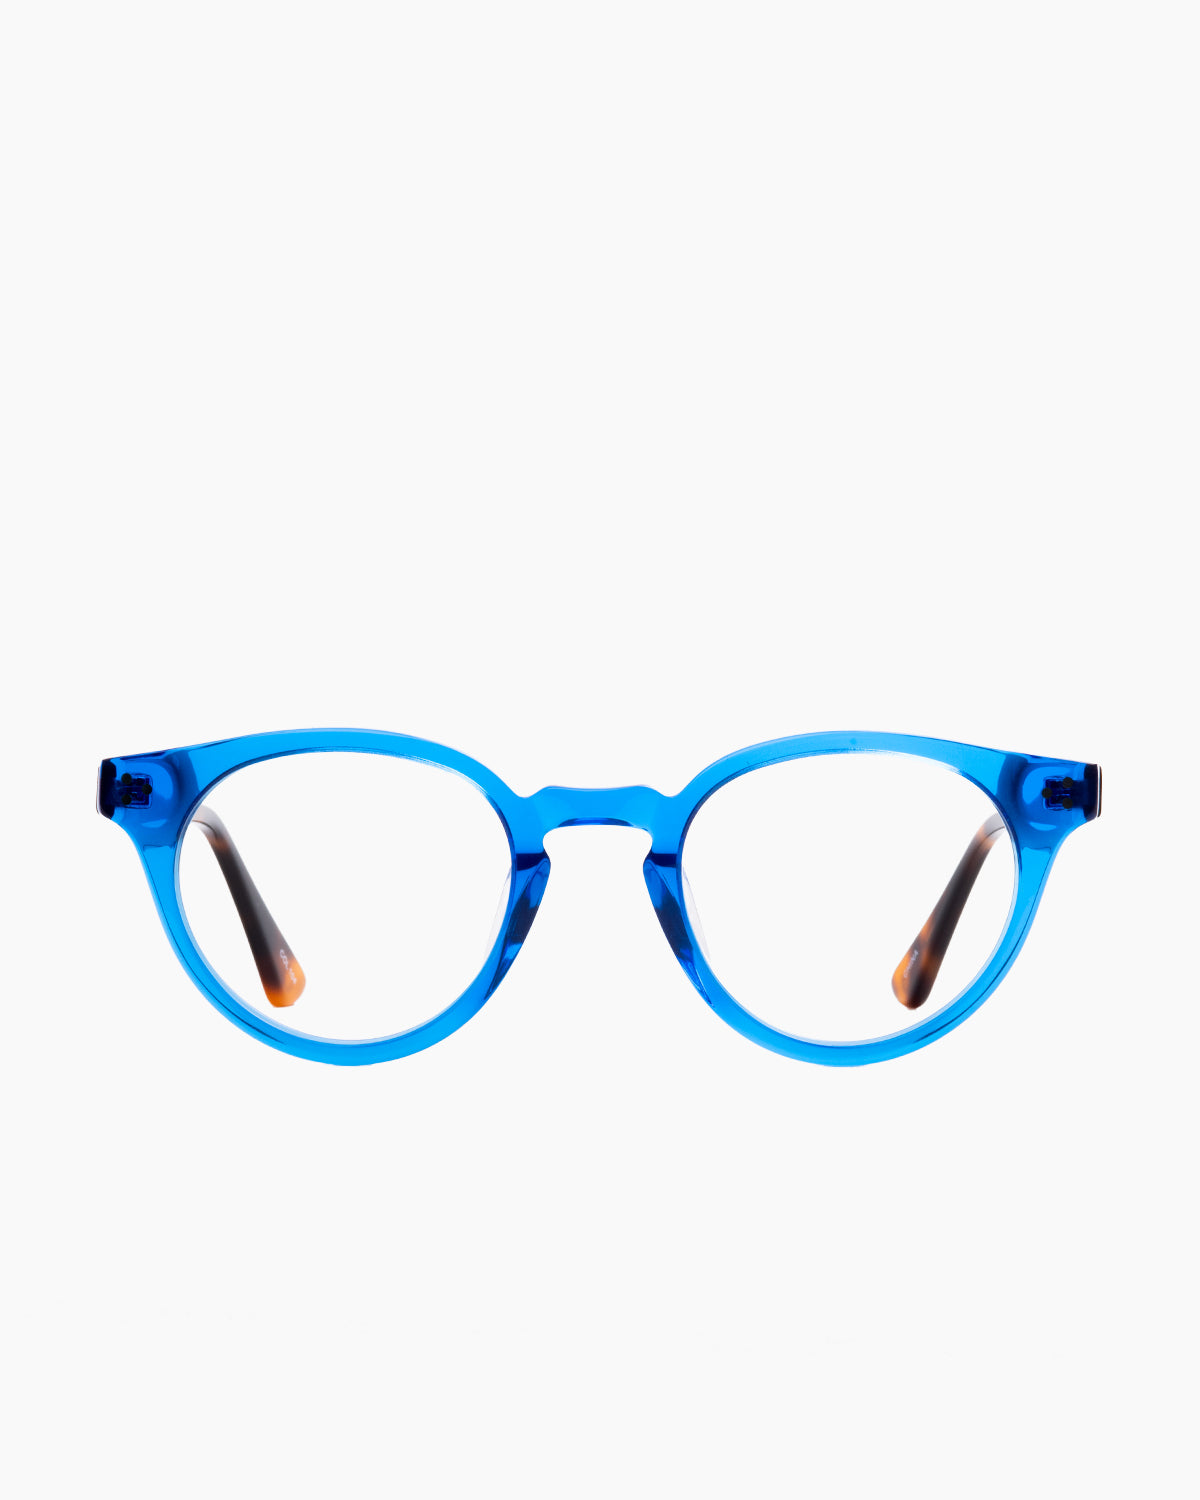 Evolve - Stills - 104 | Bar à lunettes:  Marie-Sophie Dion